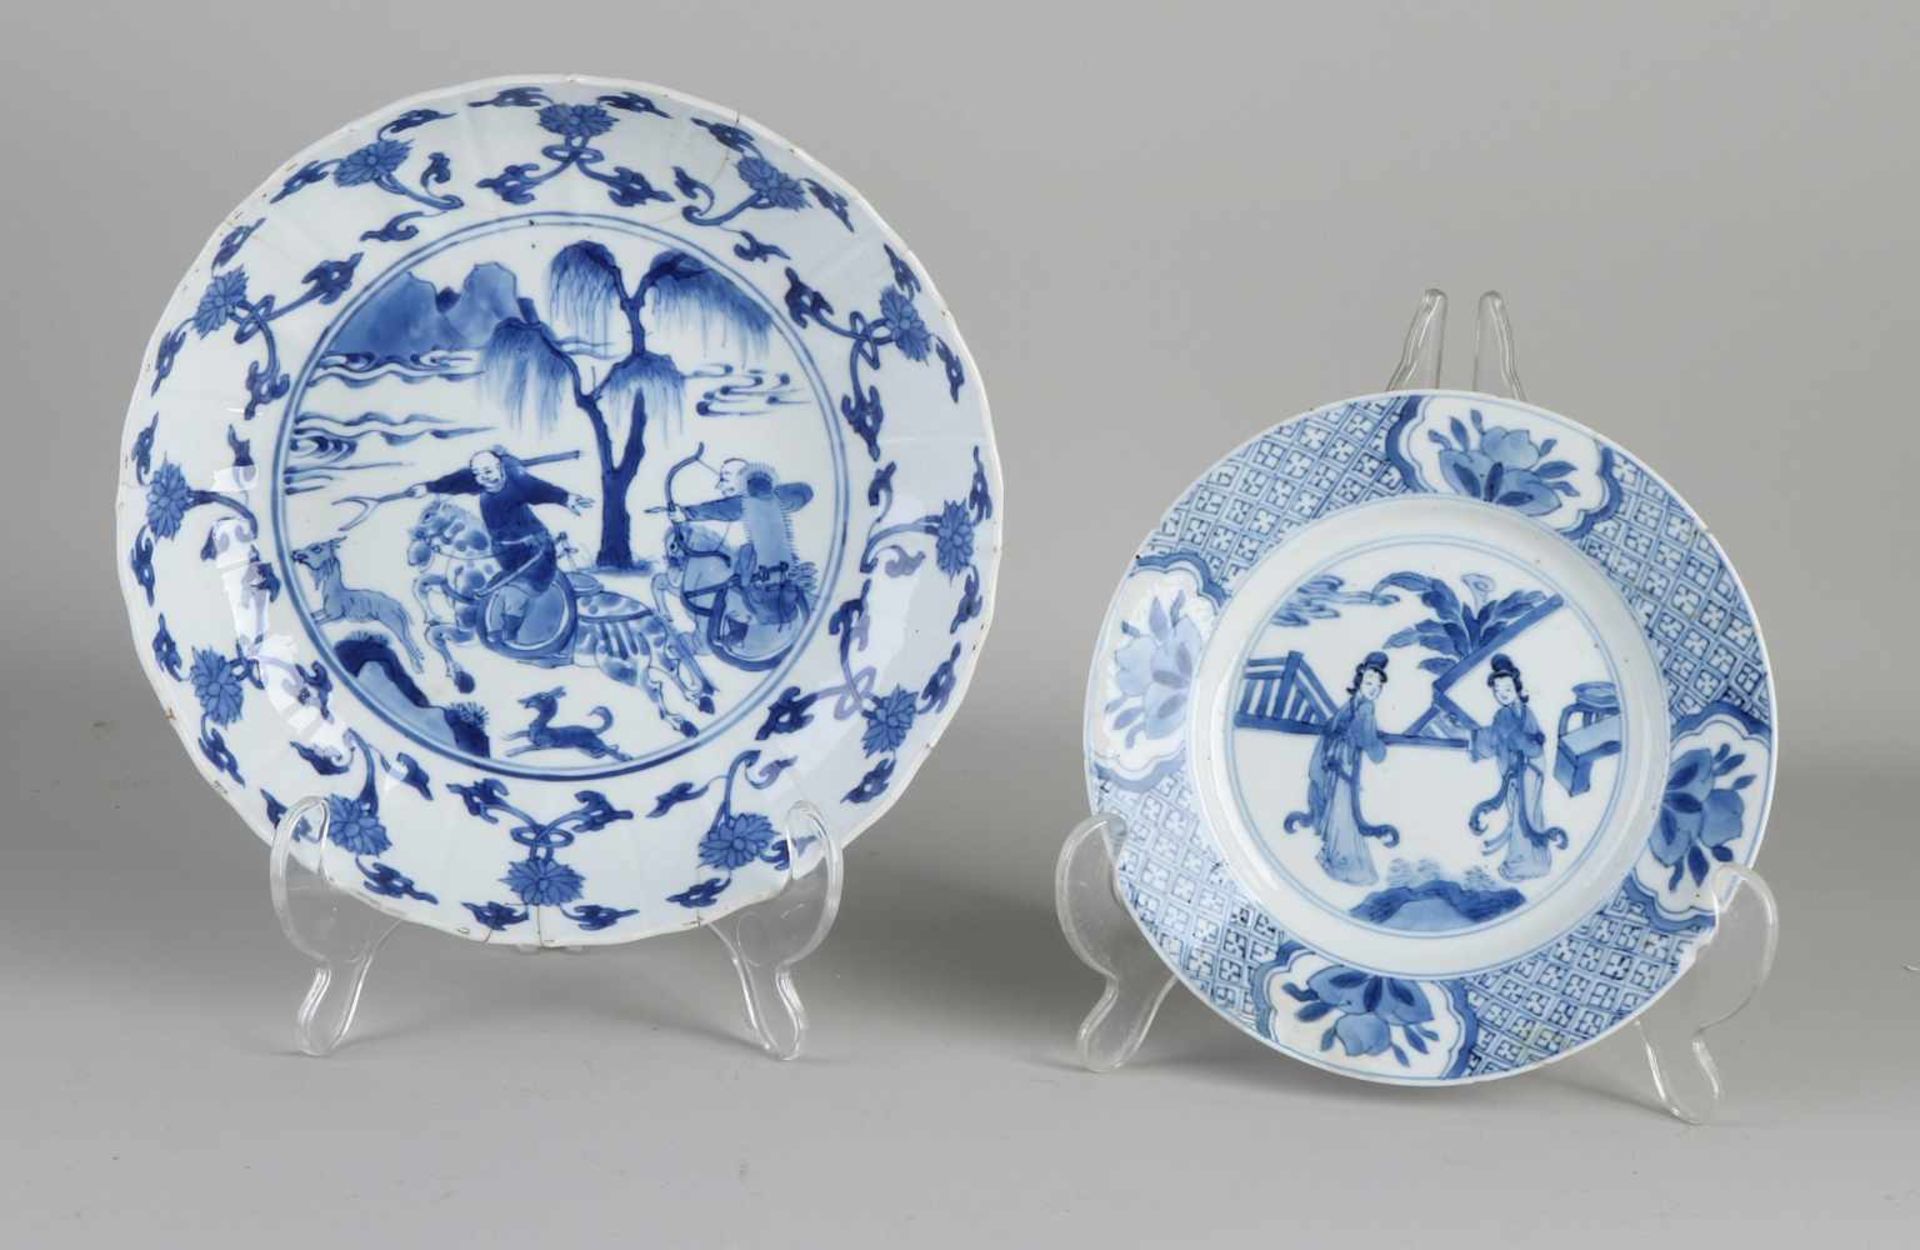 Zwei Kang Xi-Teller aus chinesischem Porzellan aus dem 18. Jahrhundert. Einmal klein mit Geishas